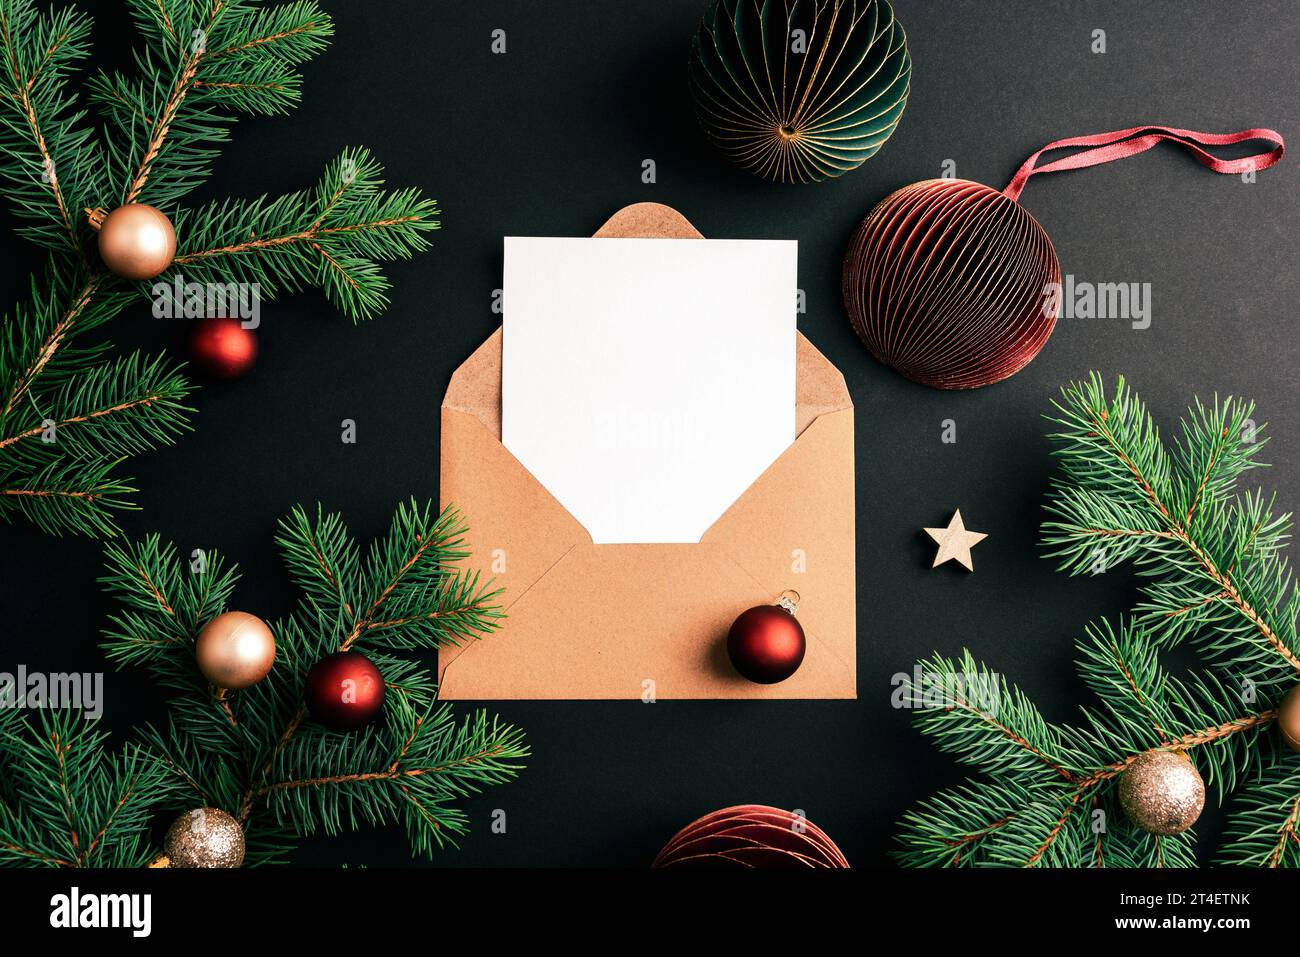 Busta con scheda vuota e rami di abete con palline di Natale su sfondo nero. Concetto di Natale. Vista dall'alto, base piatta, mockup. Foto Stock